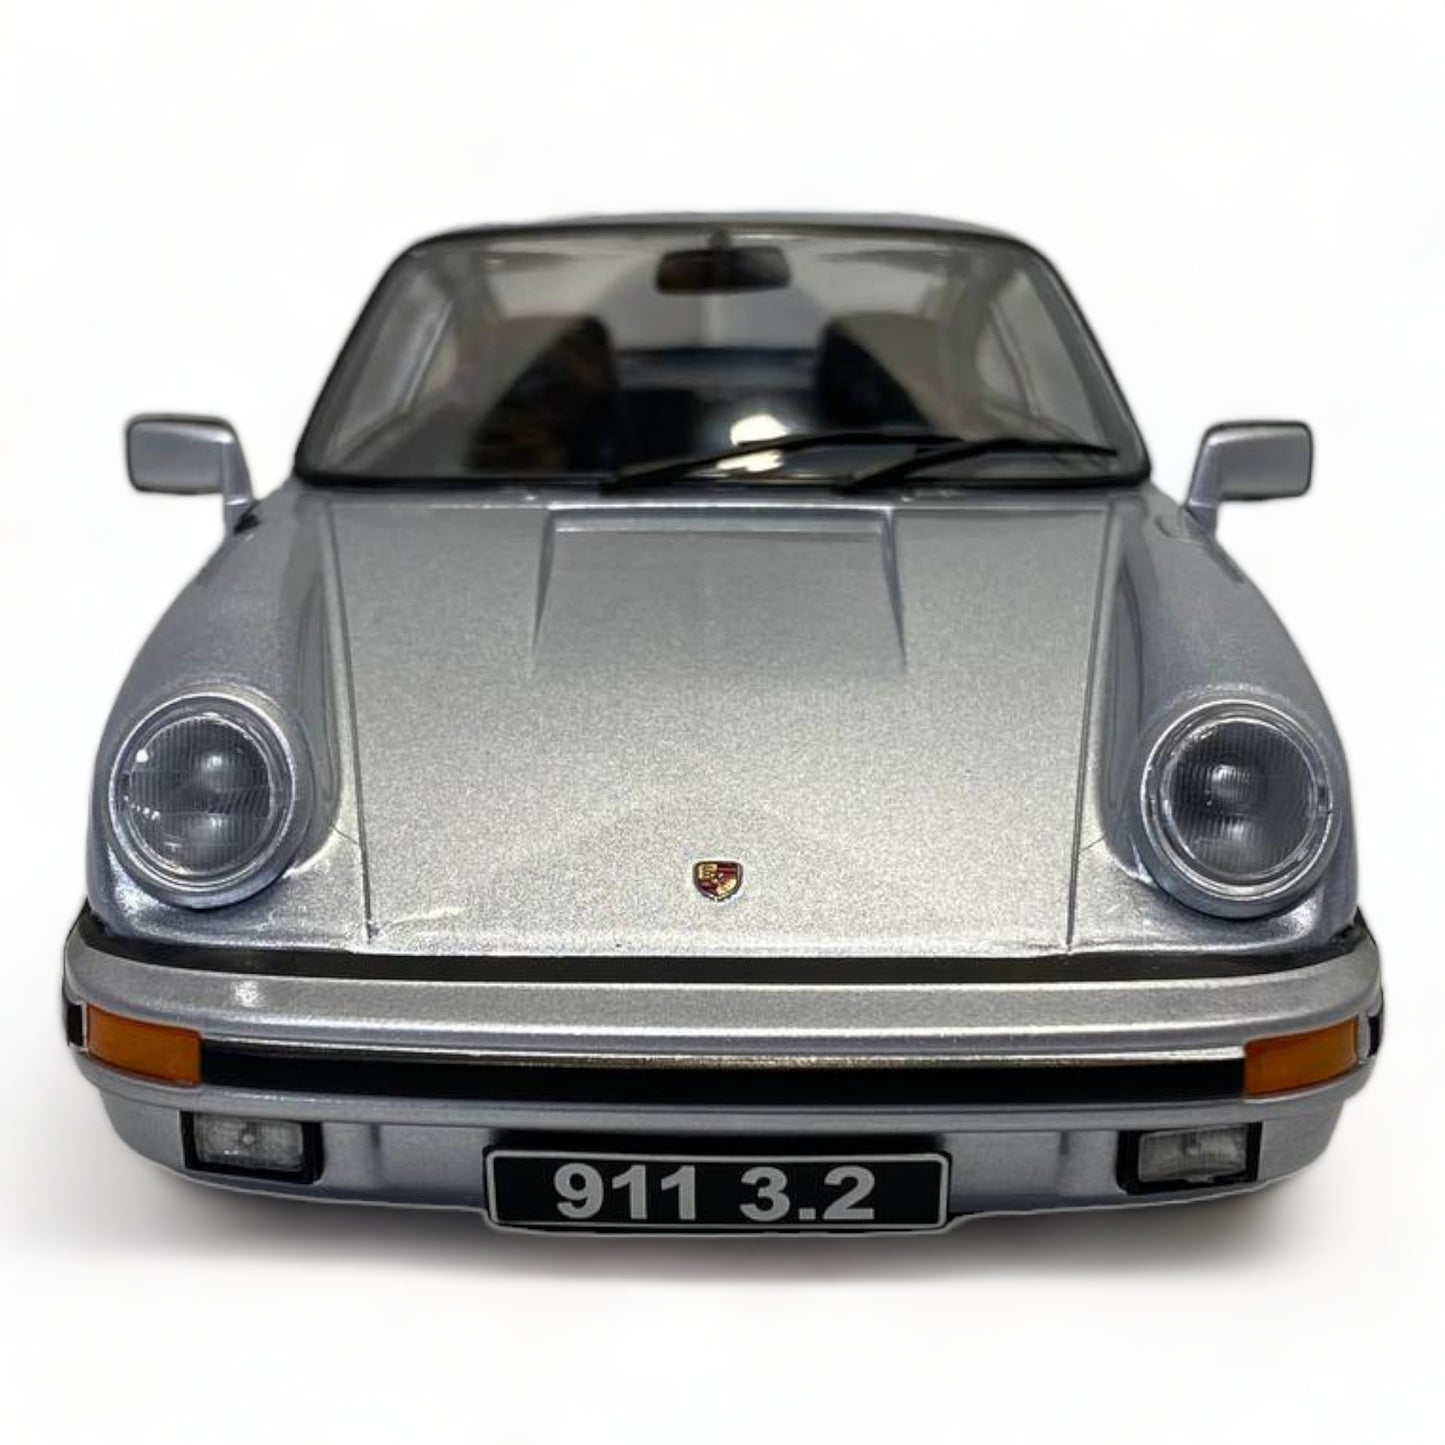 1/18 Resin KK Scale Porsche 911 Carrera Coupe 3.2 (1988) Silver Miniature Car|Sold in Dturman.com Dubai UAE.